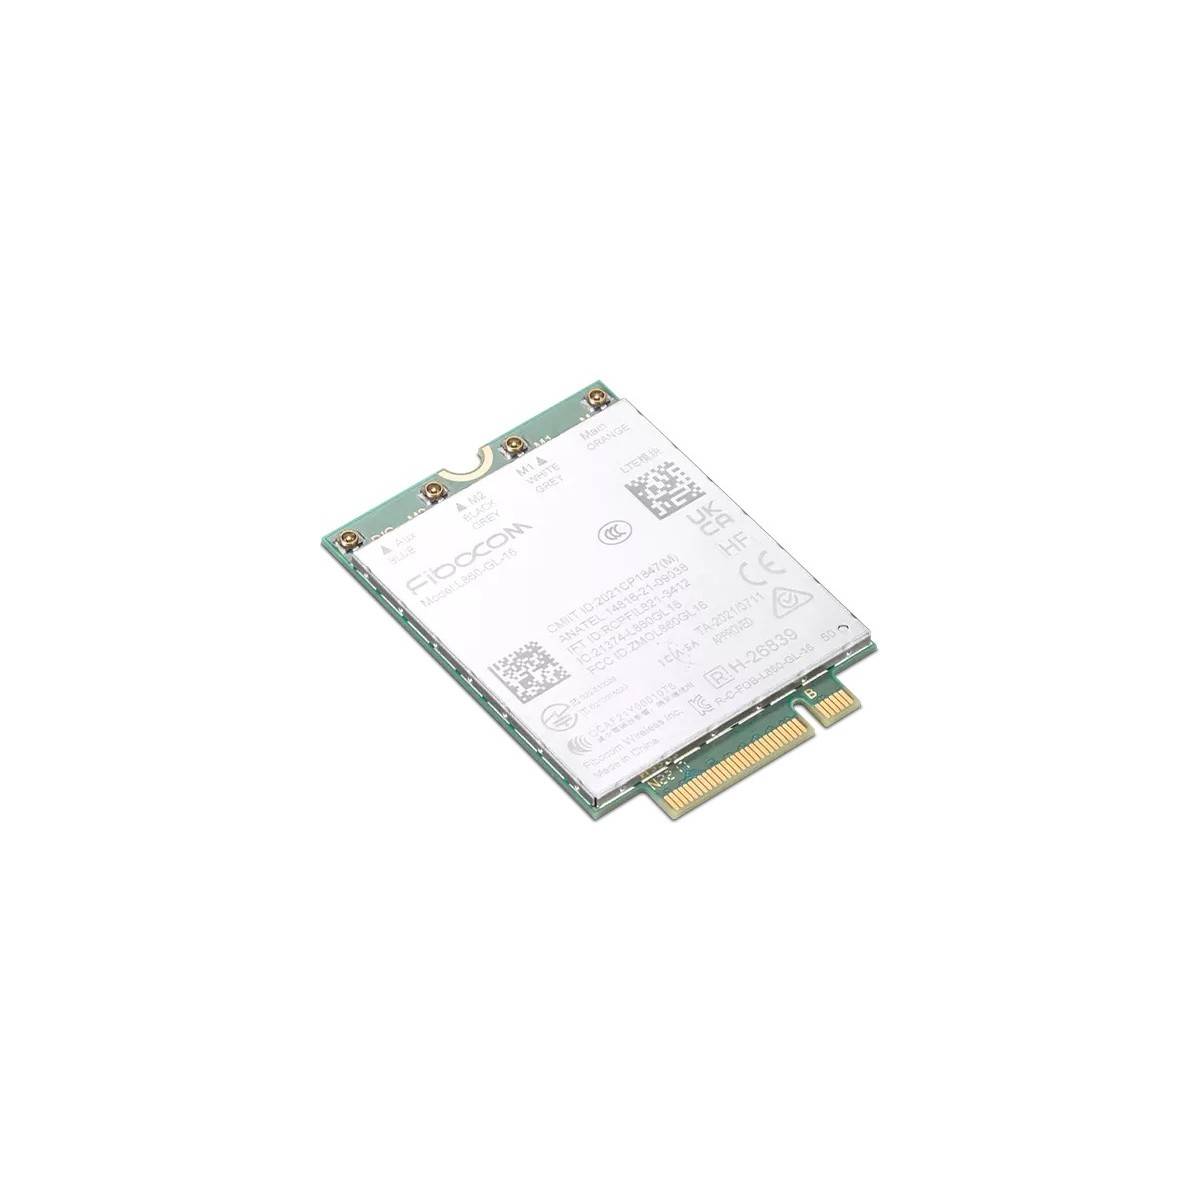 Lenovo ThinkPad Fibocom L860-GL-16 CAT16 4G LTE WWAN Module for T14